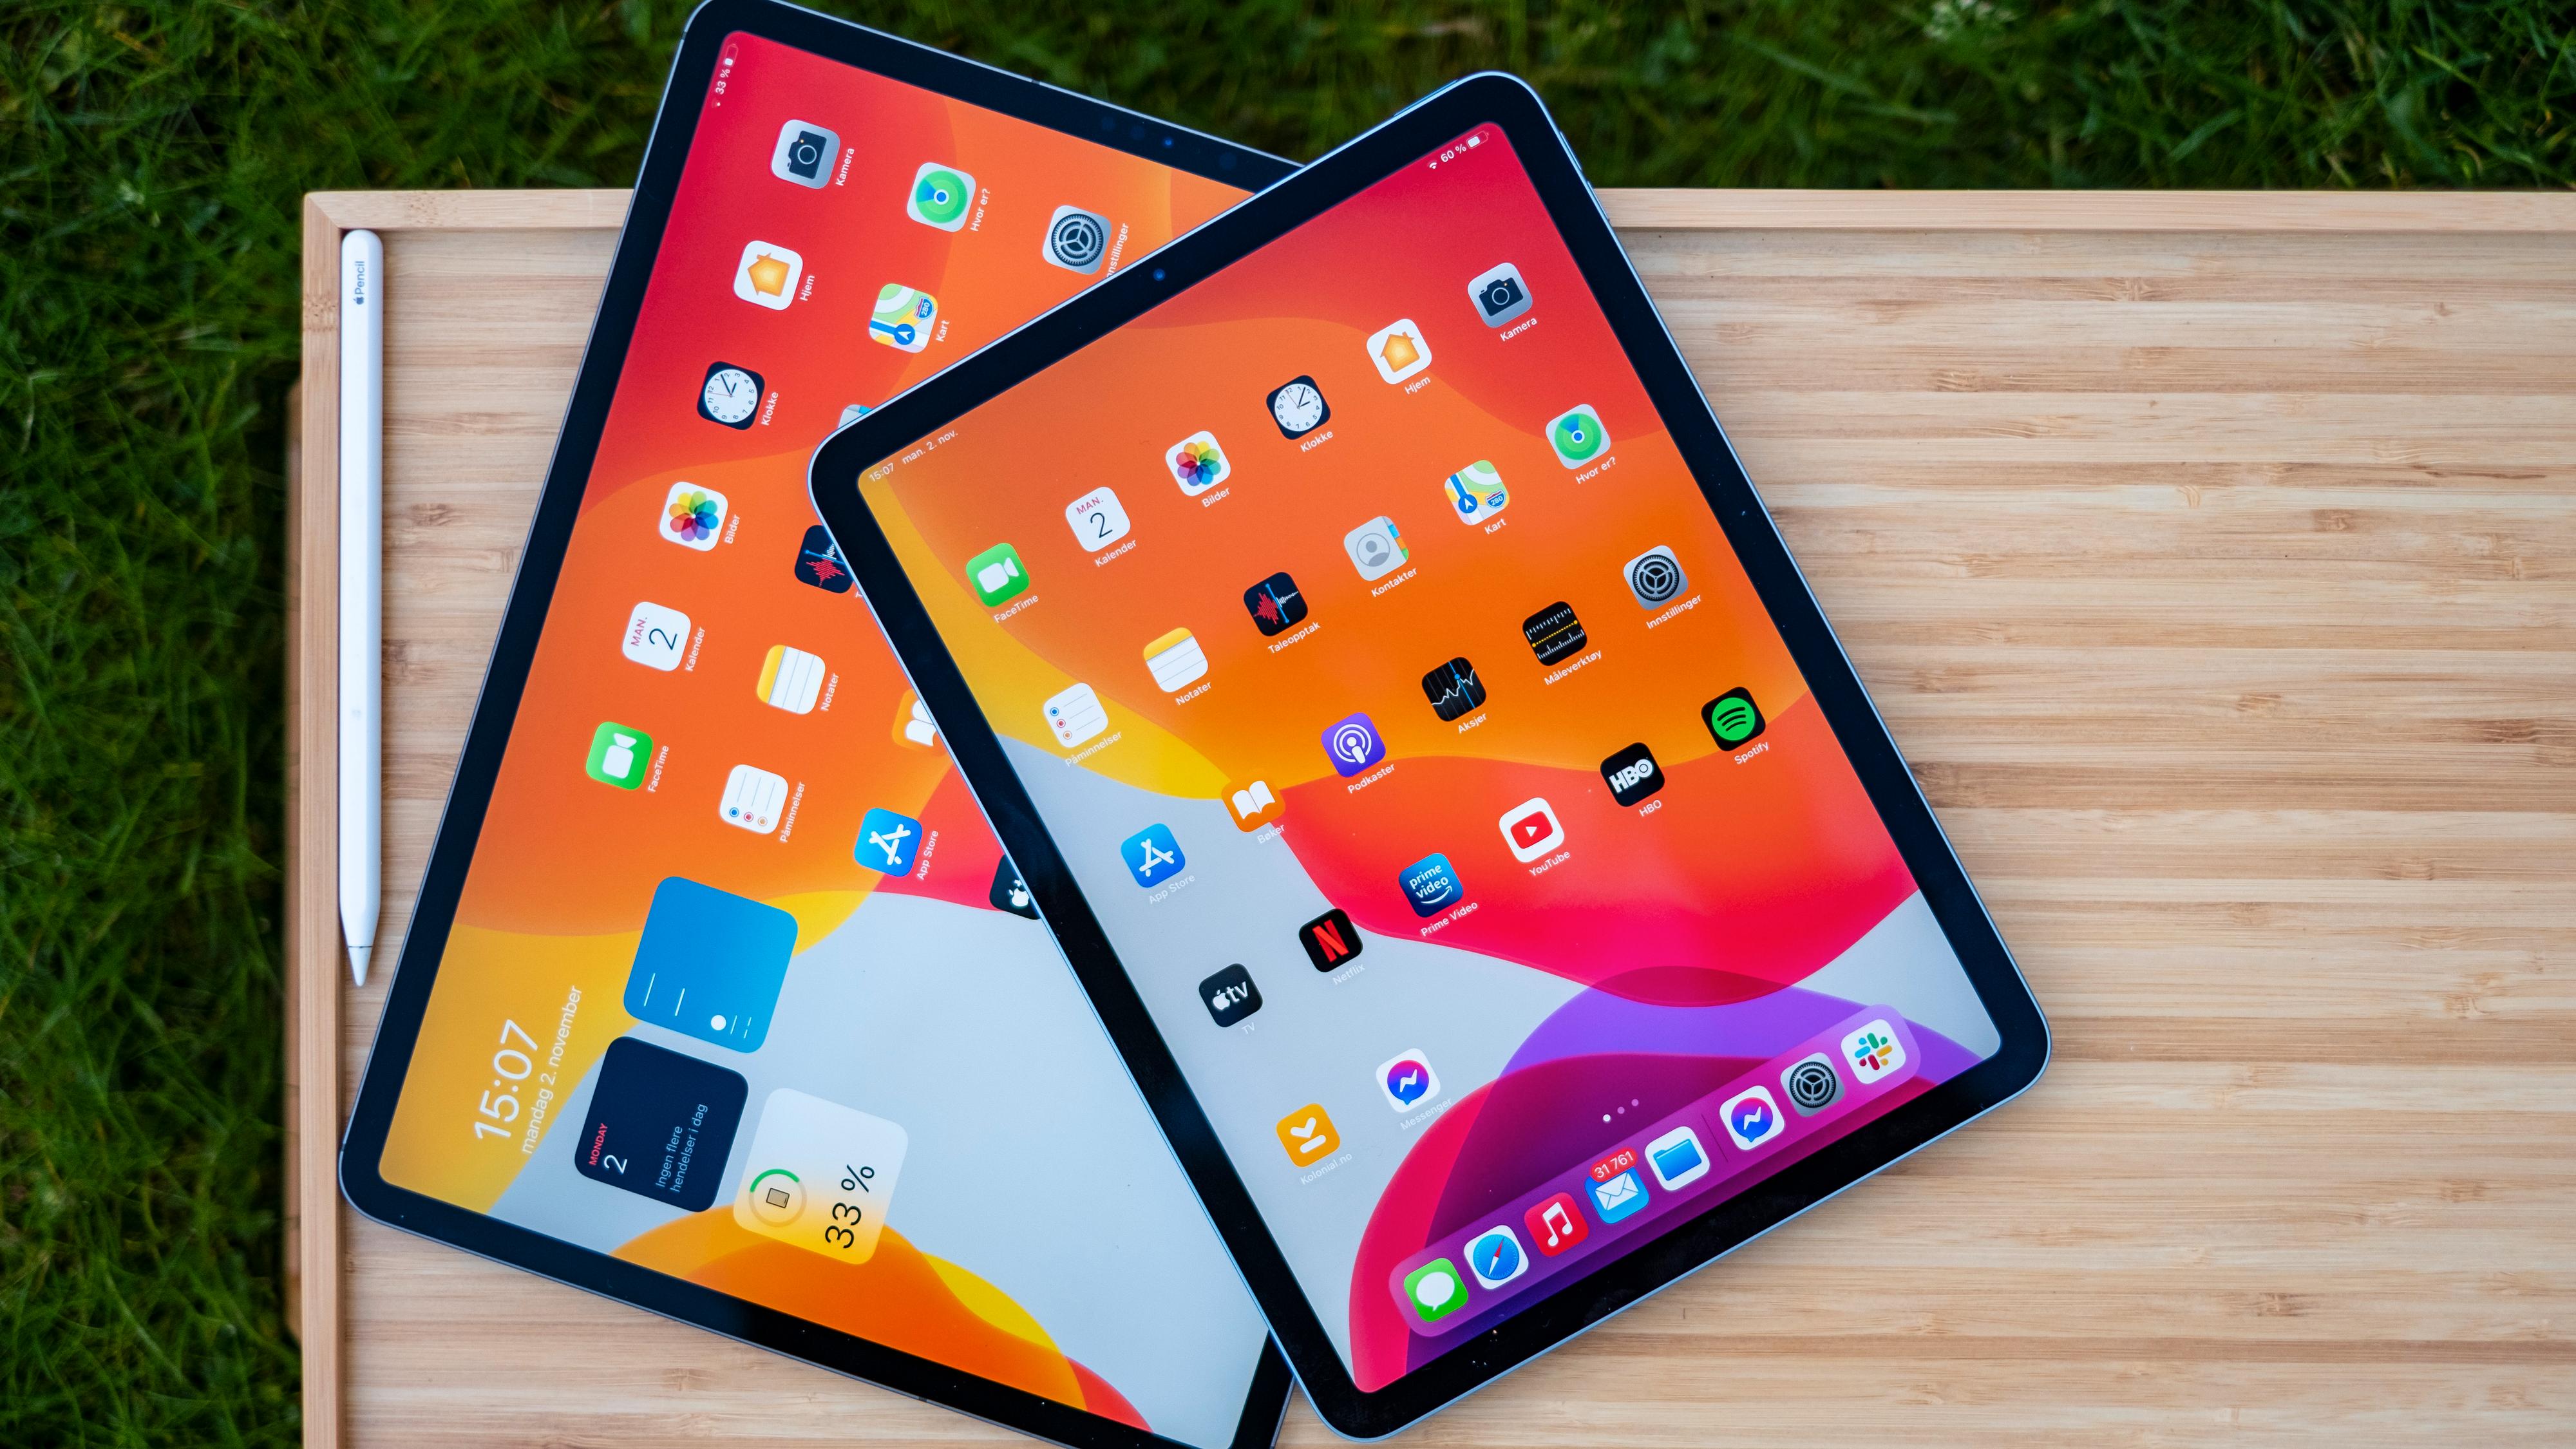 iPad Air deler design og mange egenskaper med iPad Pro, men vi savner den raske og gode iPad Pro-skjermen som er fin til mange timers sammenhengende bruk.